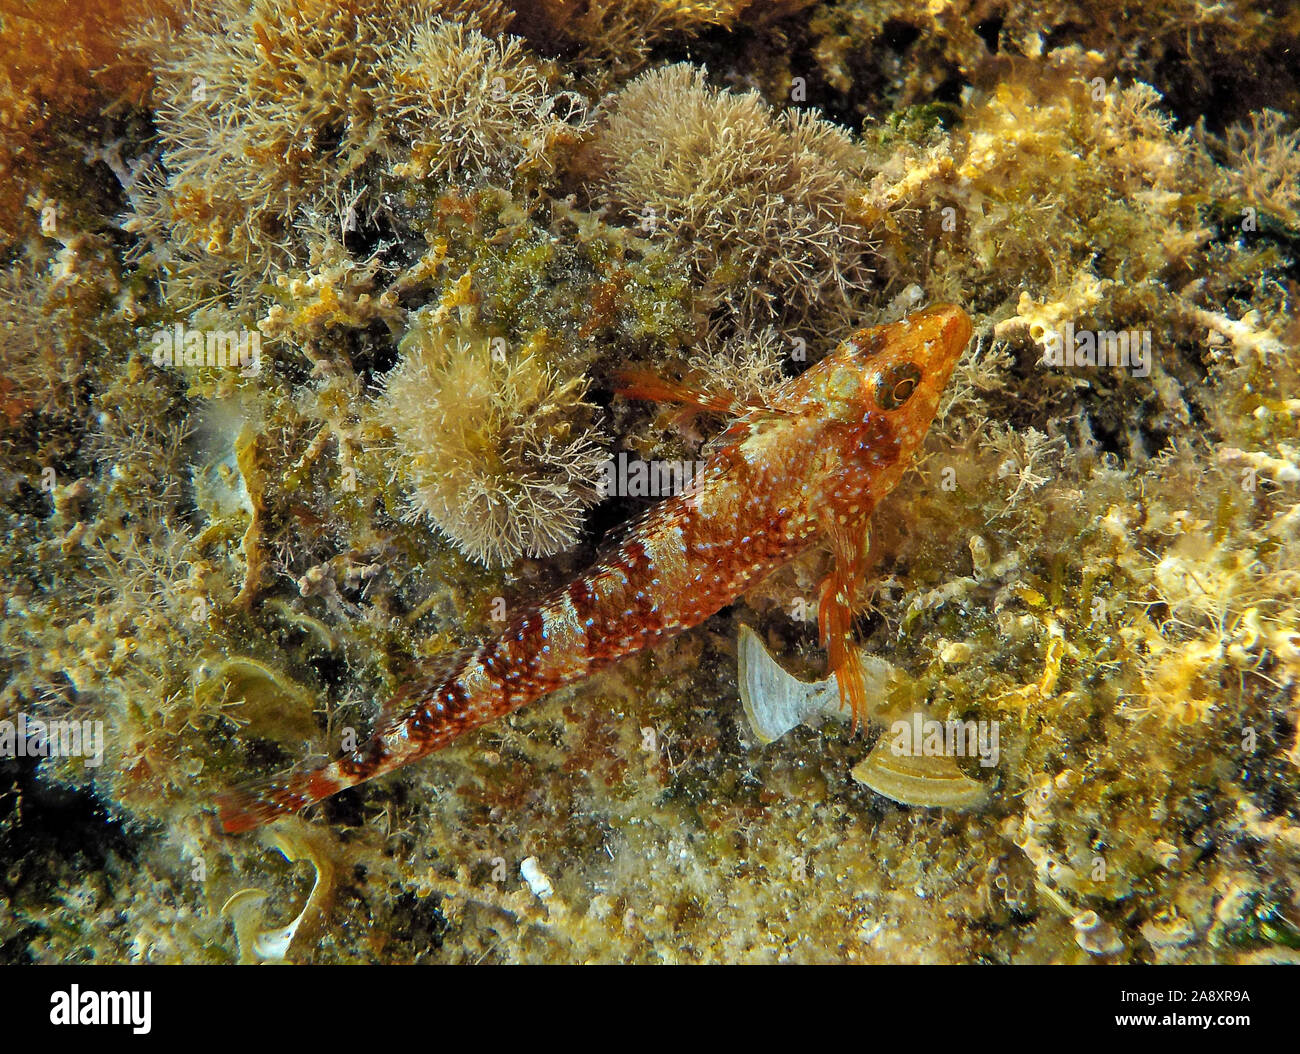 Kleiner Knurrhahn auf dem Meeresboden der Tremiti Inseln in der Adria, in Apulien, Italien Stockfoto